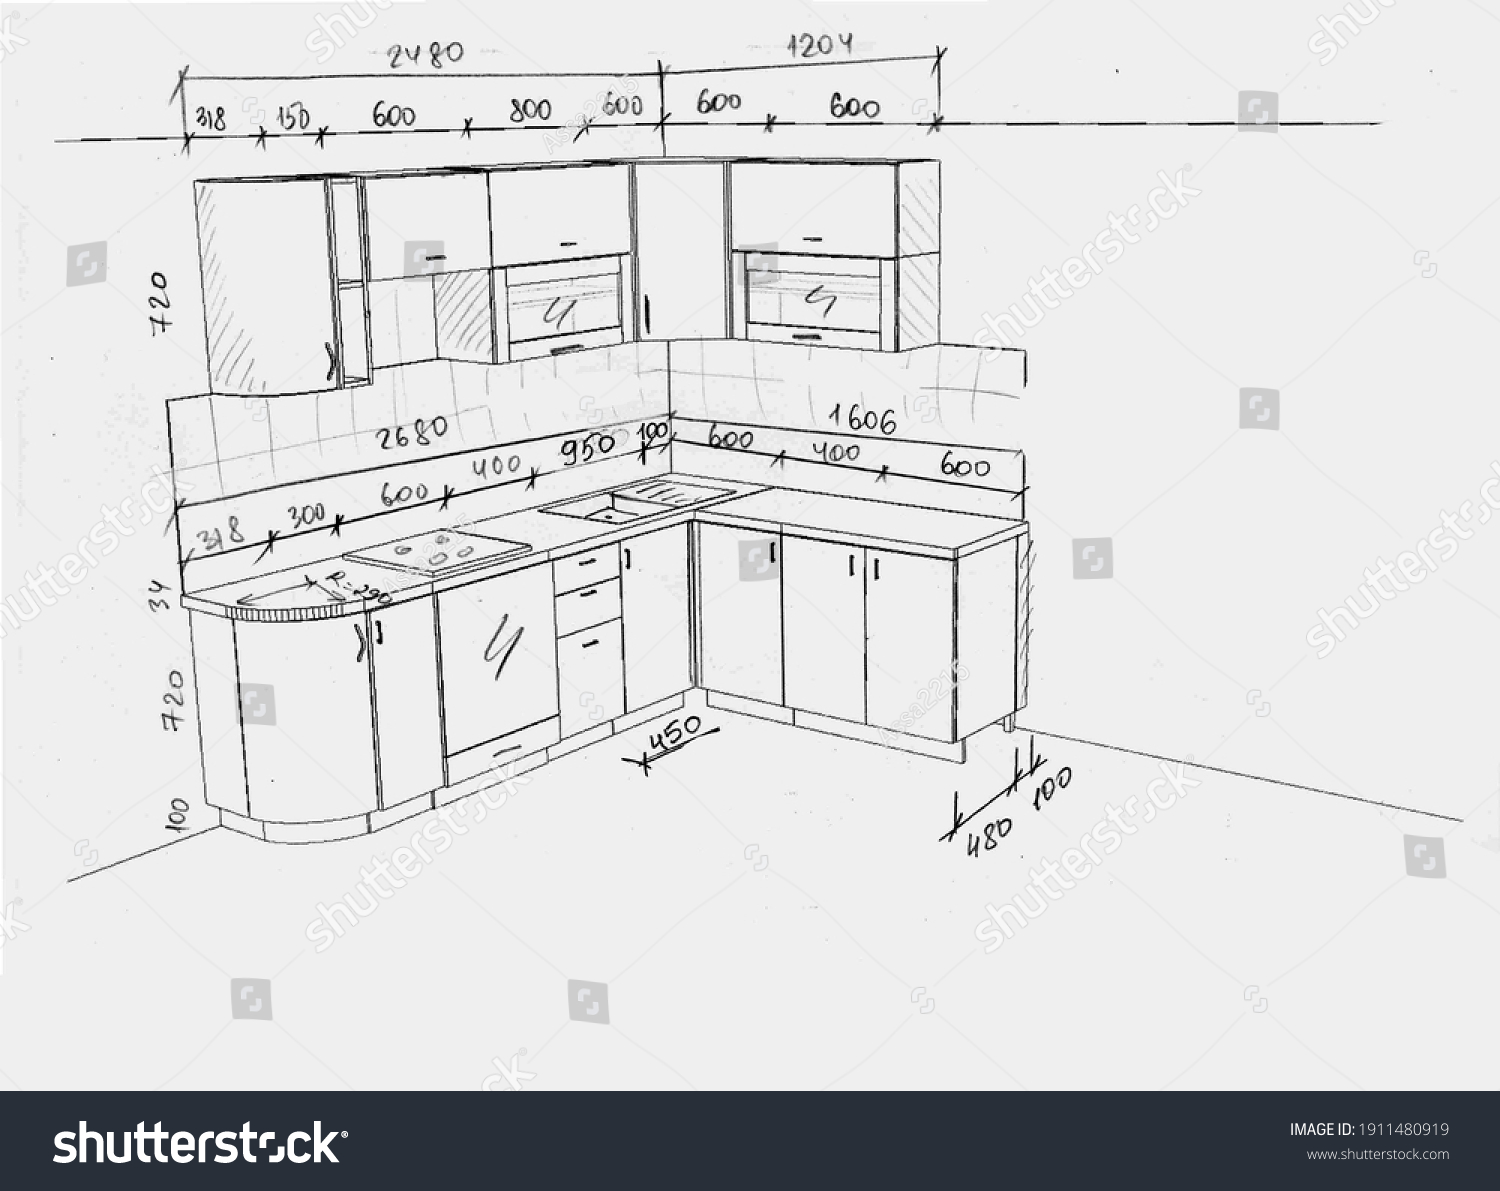 Высота кухонь икеа от пола со столешницей